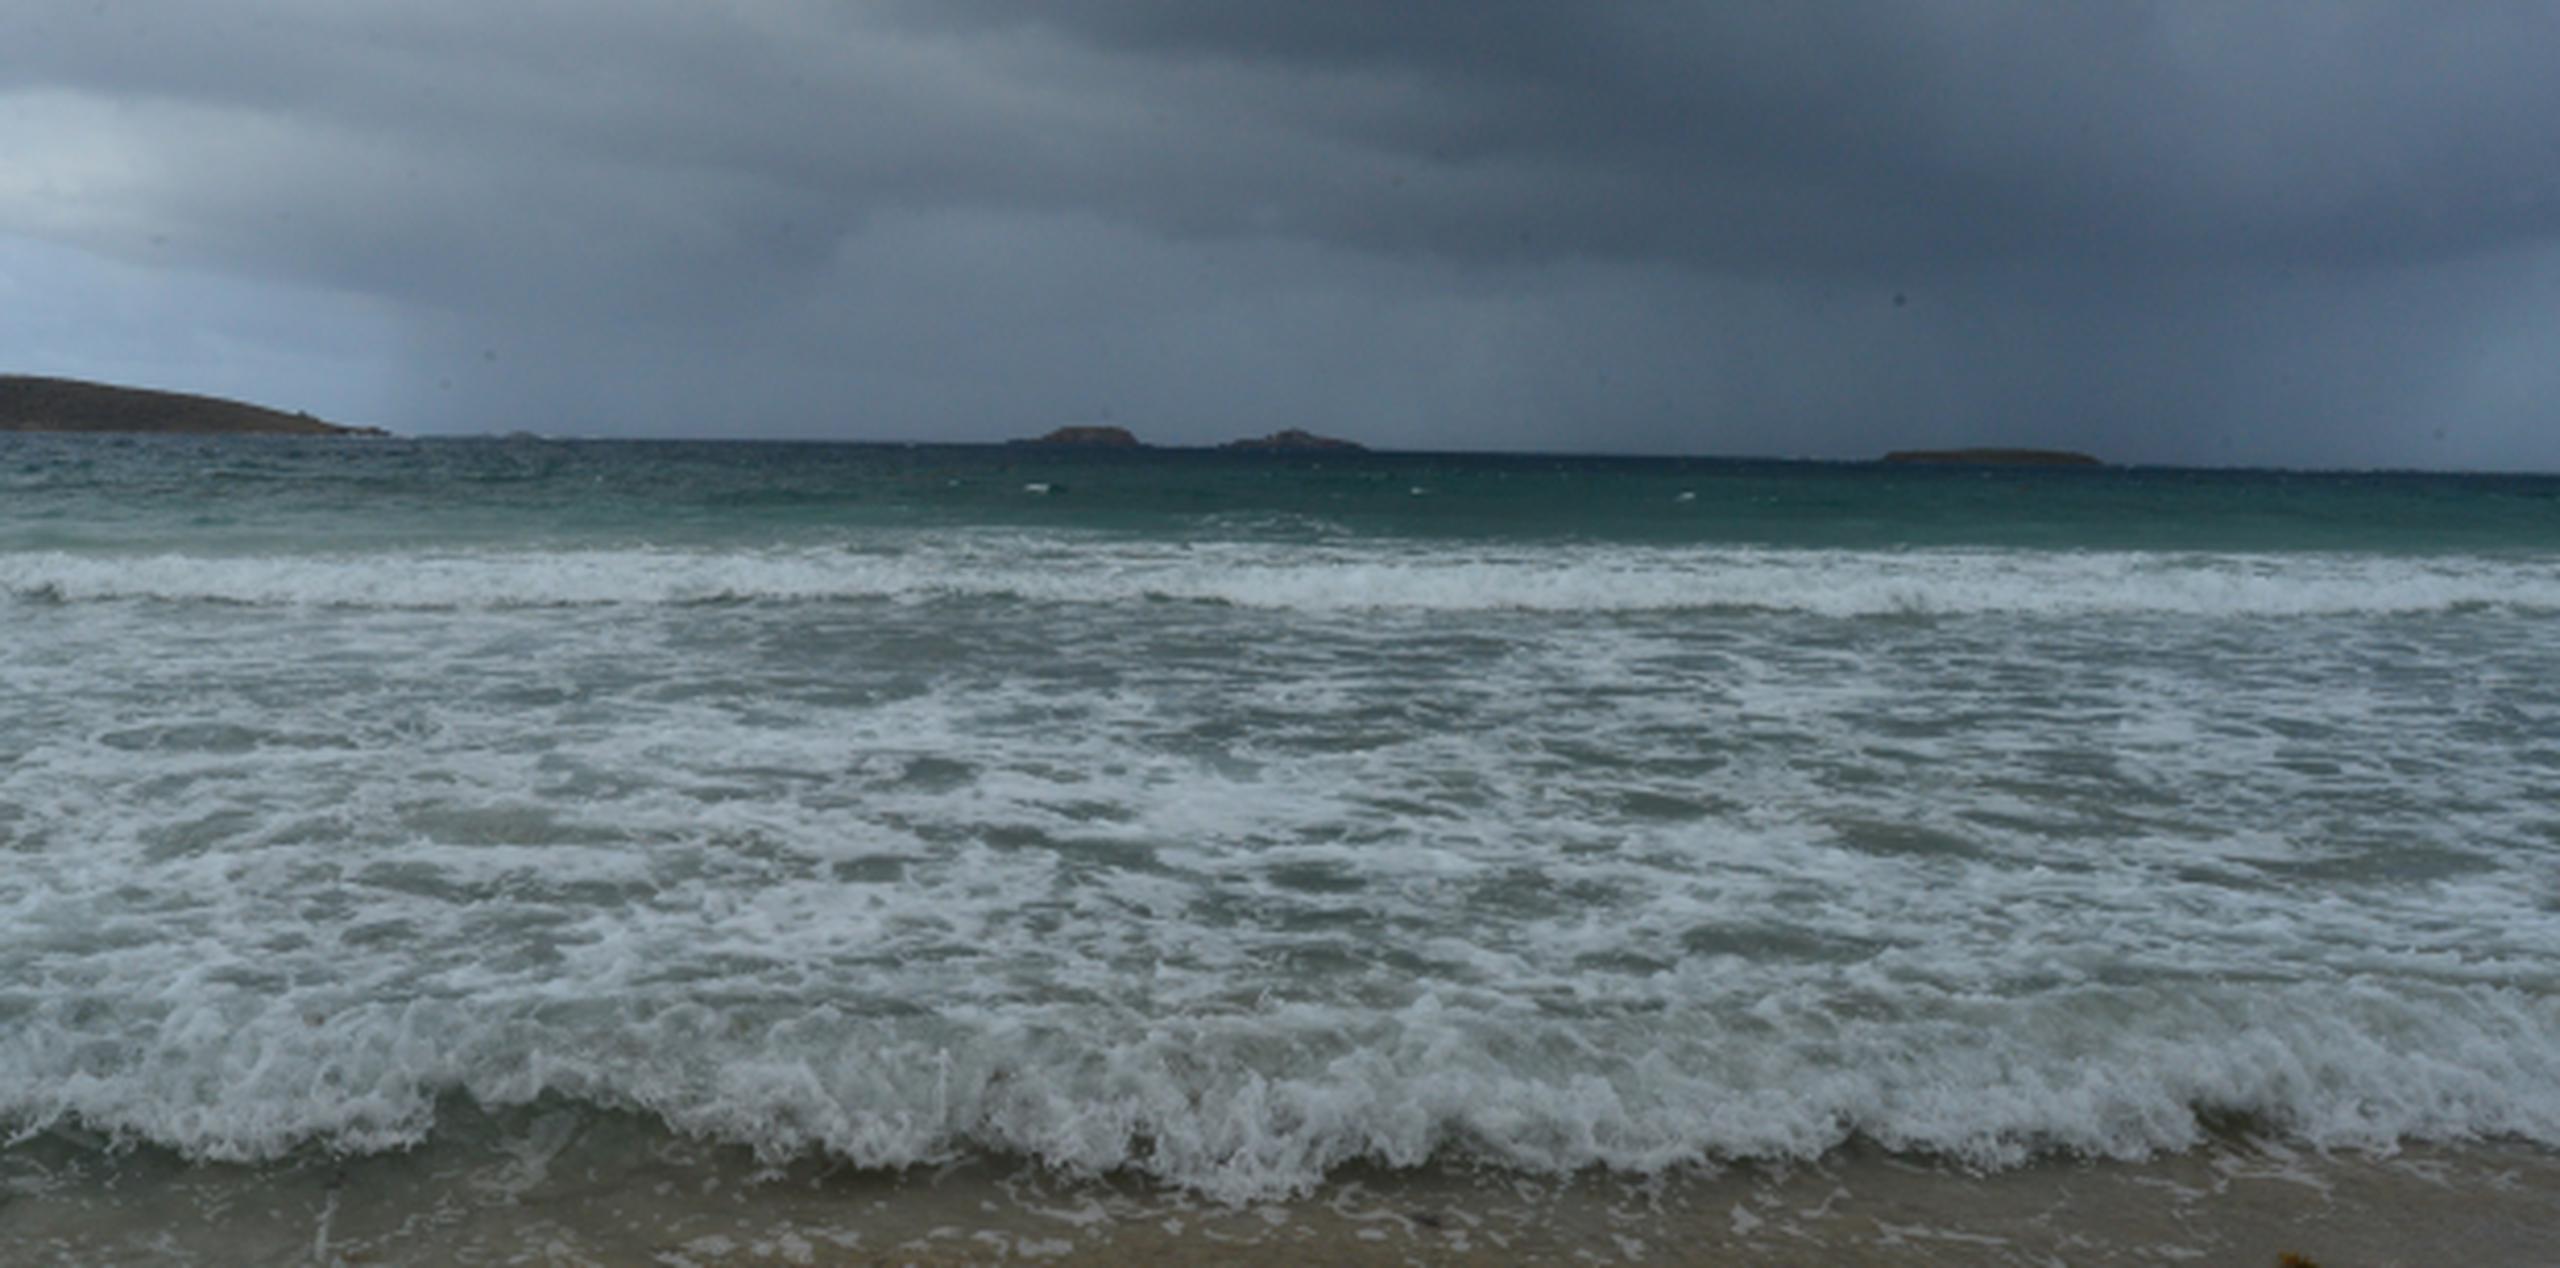 En el muelle de Culebra las olas golpean ya intensamente y se han registrado intensos aguaceros de corta duración. (luis.alcaladelolmo@gfrmedia.com)